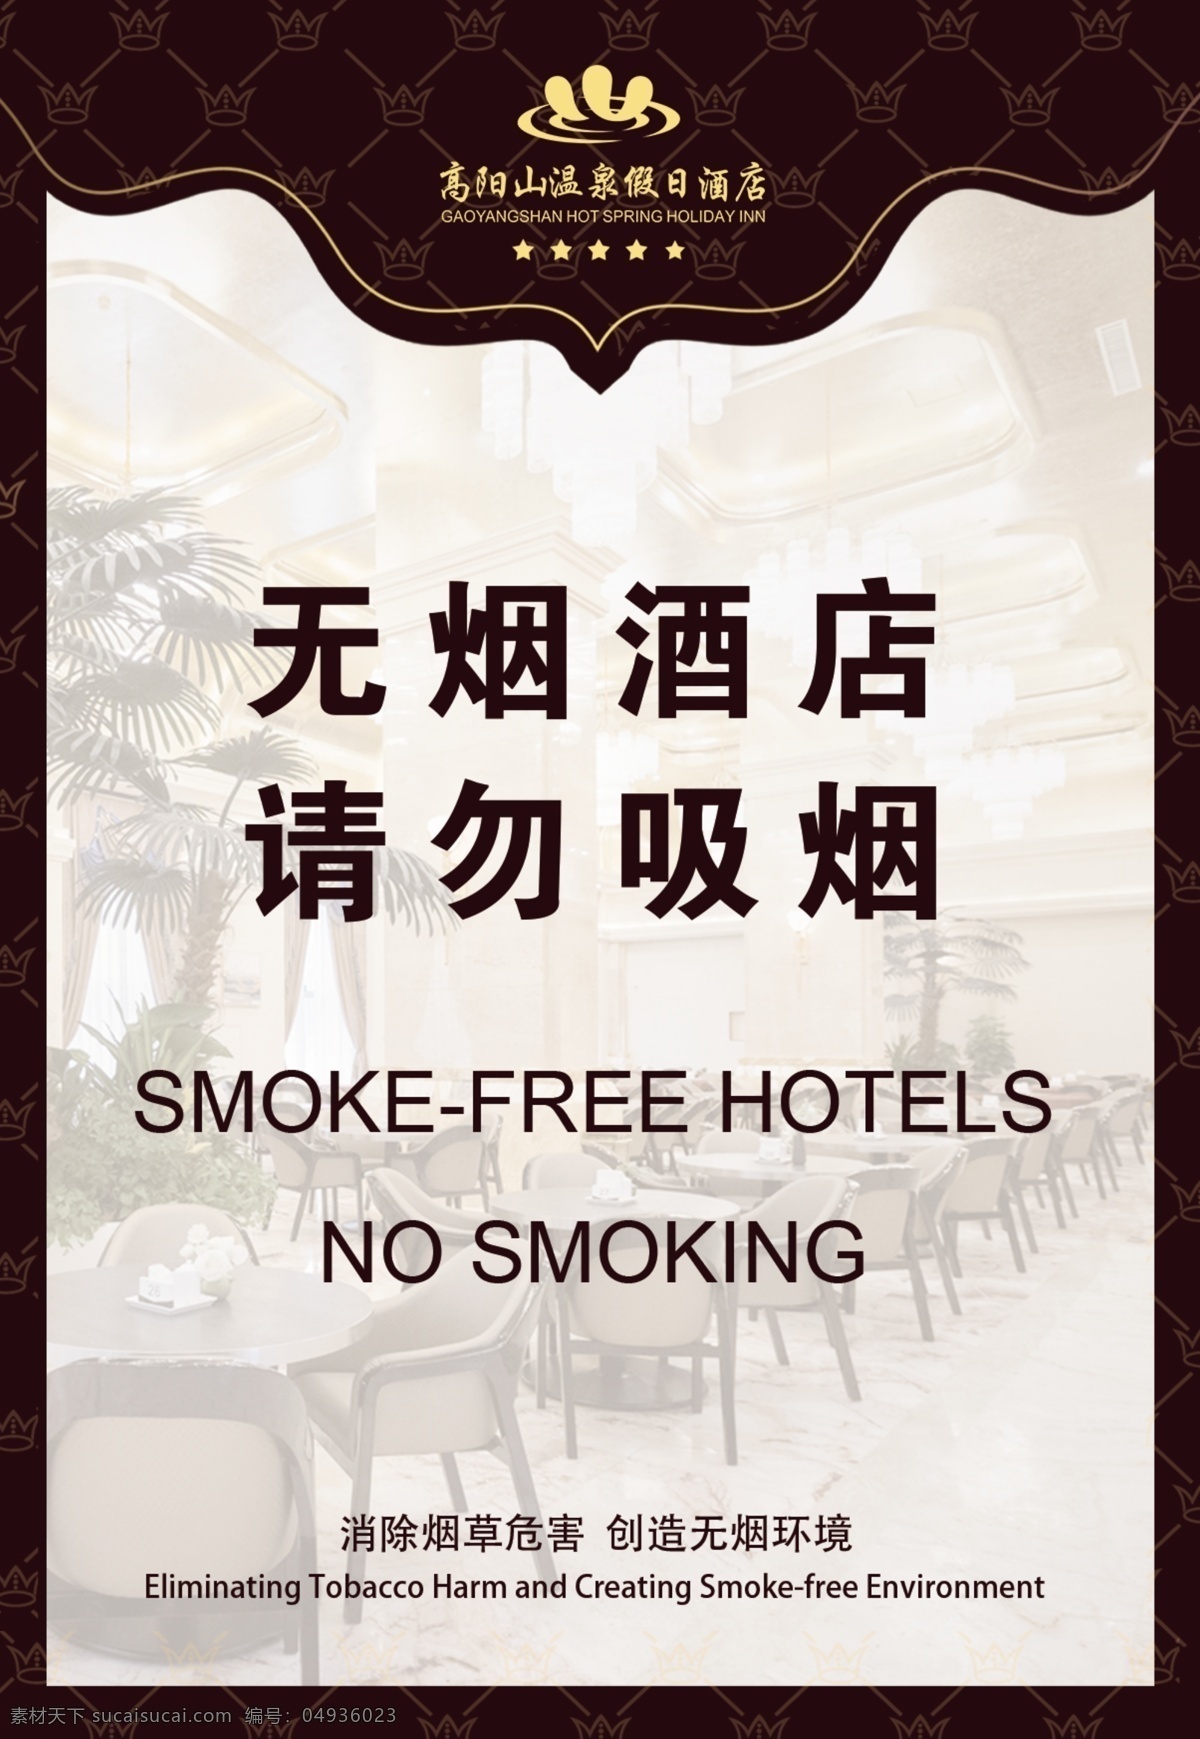 请勿吸烟台卡 台卡 请勿吸烟 酒店台卡 温泉台卡 亚克力台卡 禁止吸烟